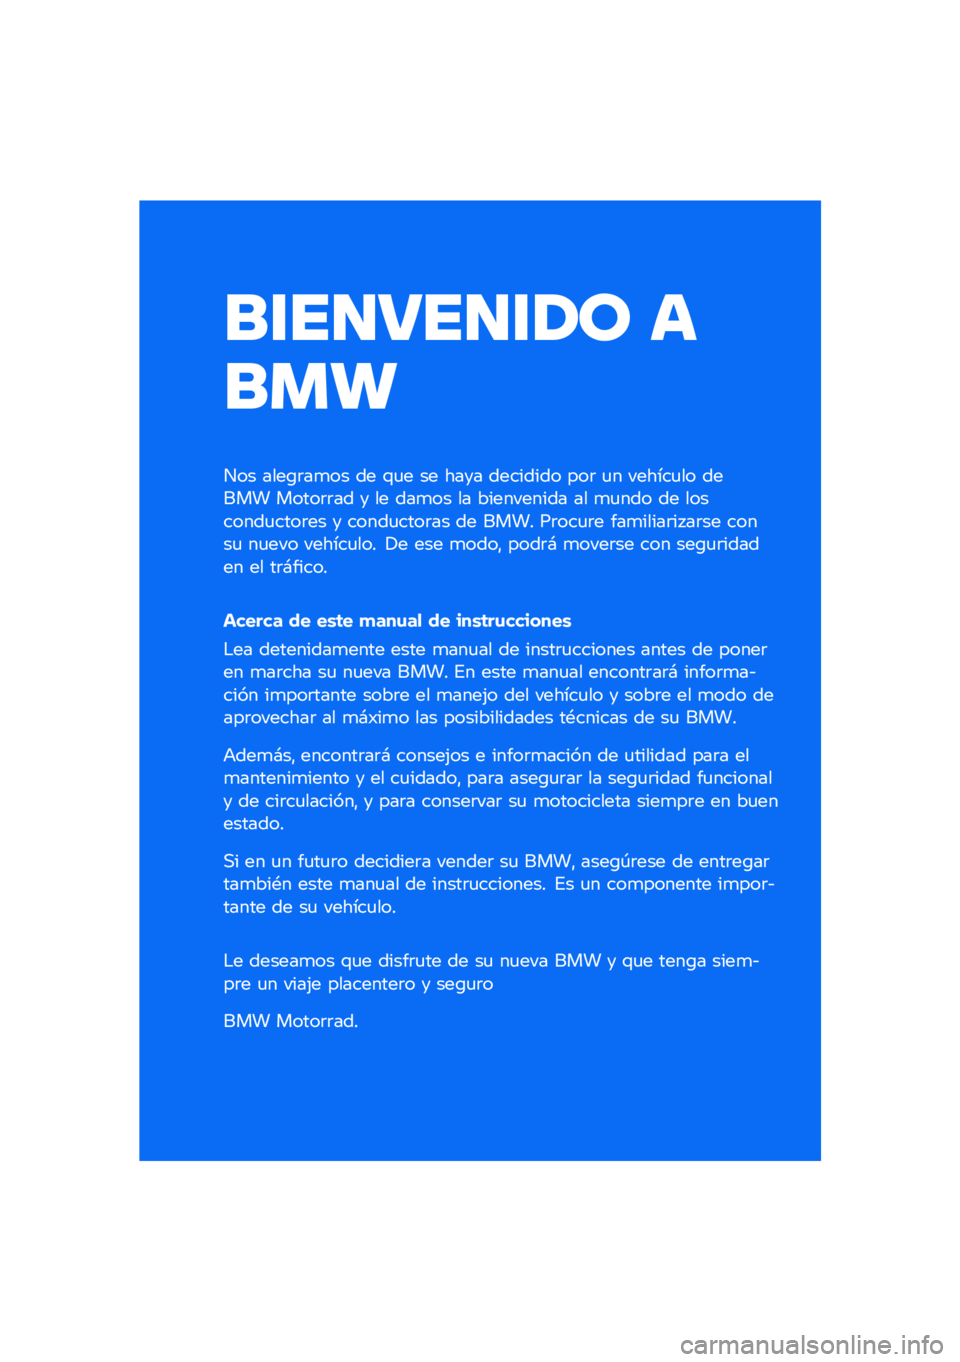 BMW MOTORRAD F 750 GS 2020  Manual de instrucciones (in Spanish) ����������\b �	
��
�
��� ����\b�	��
�� �� �\f�
� �� ���� �������� ���	 �
� ������
�� ����� �����	�	�� � �� ���
�� �� ��������